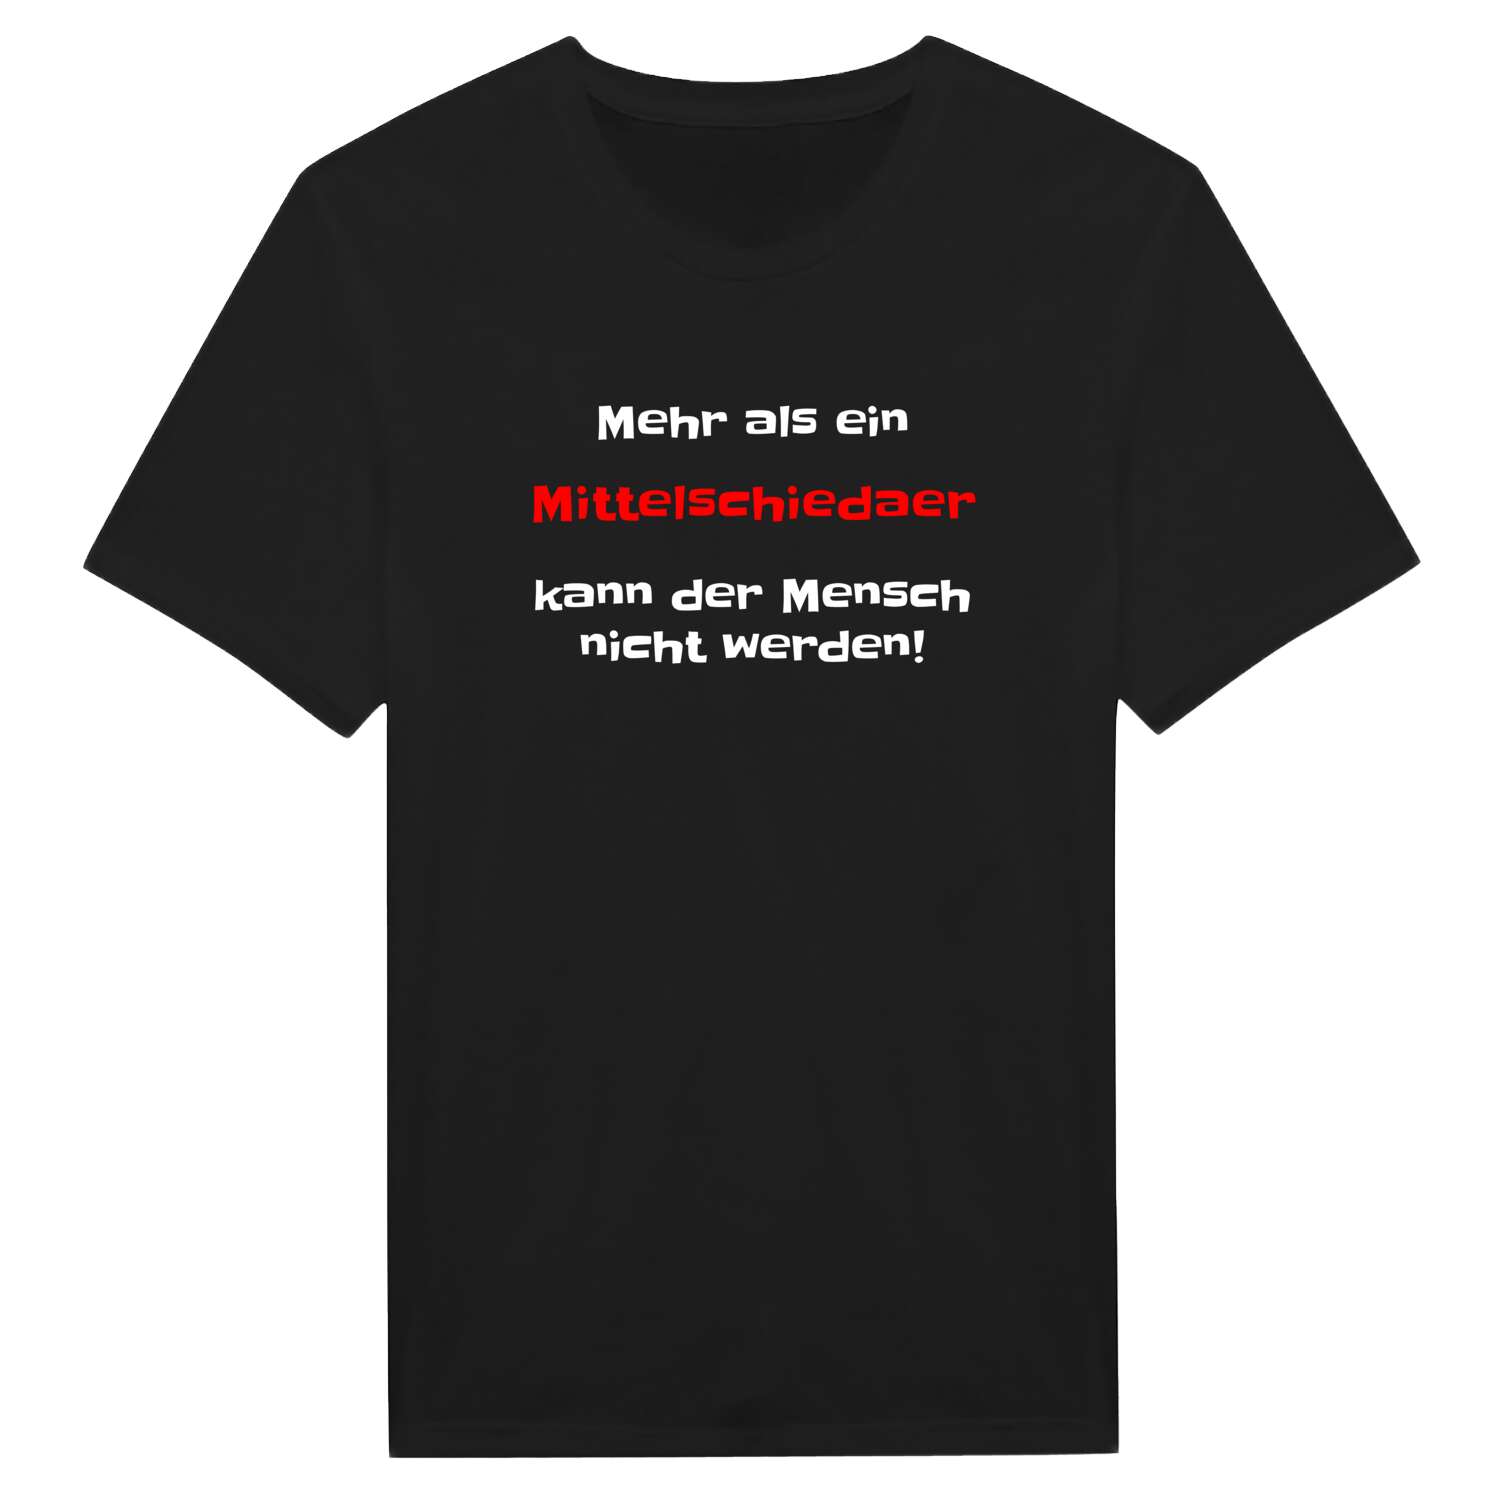 Mittelschieda T-Shirt »Mehr als ein«